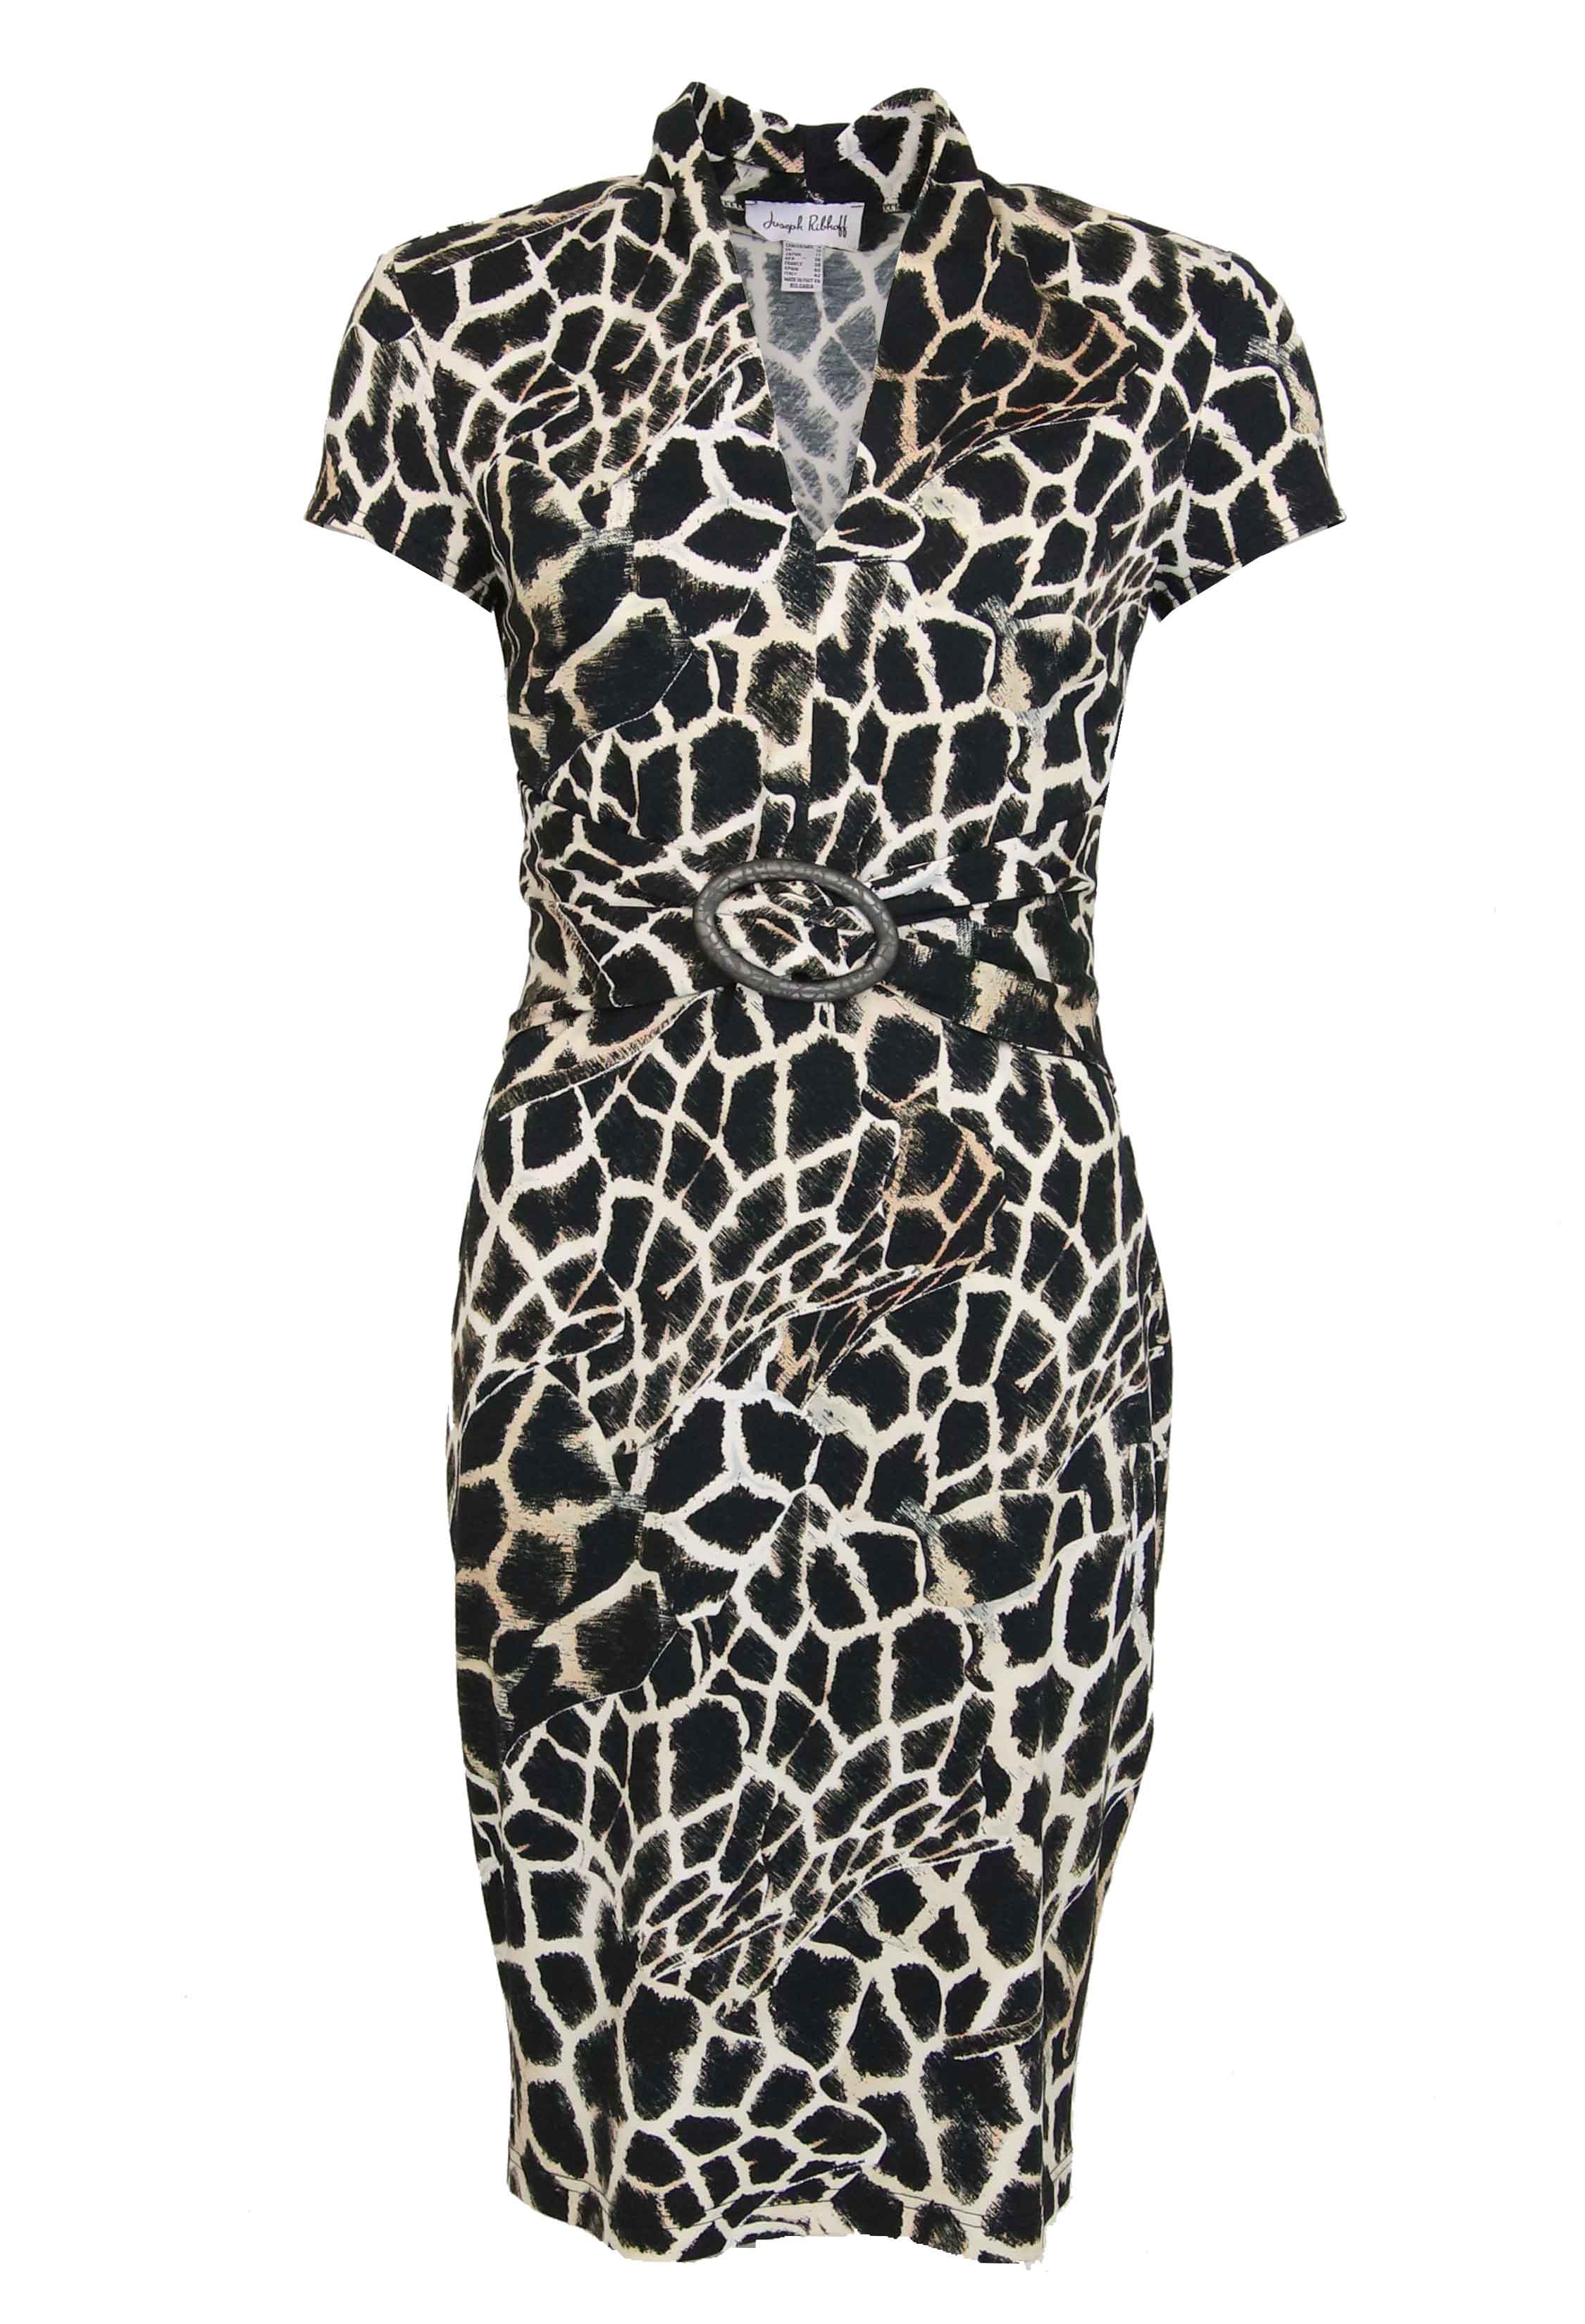 joseph ribkoff leopard print dress